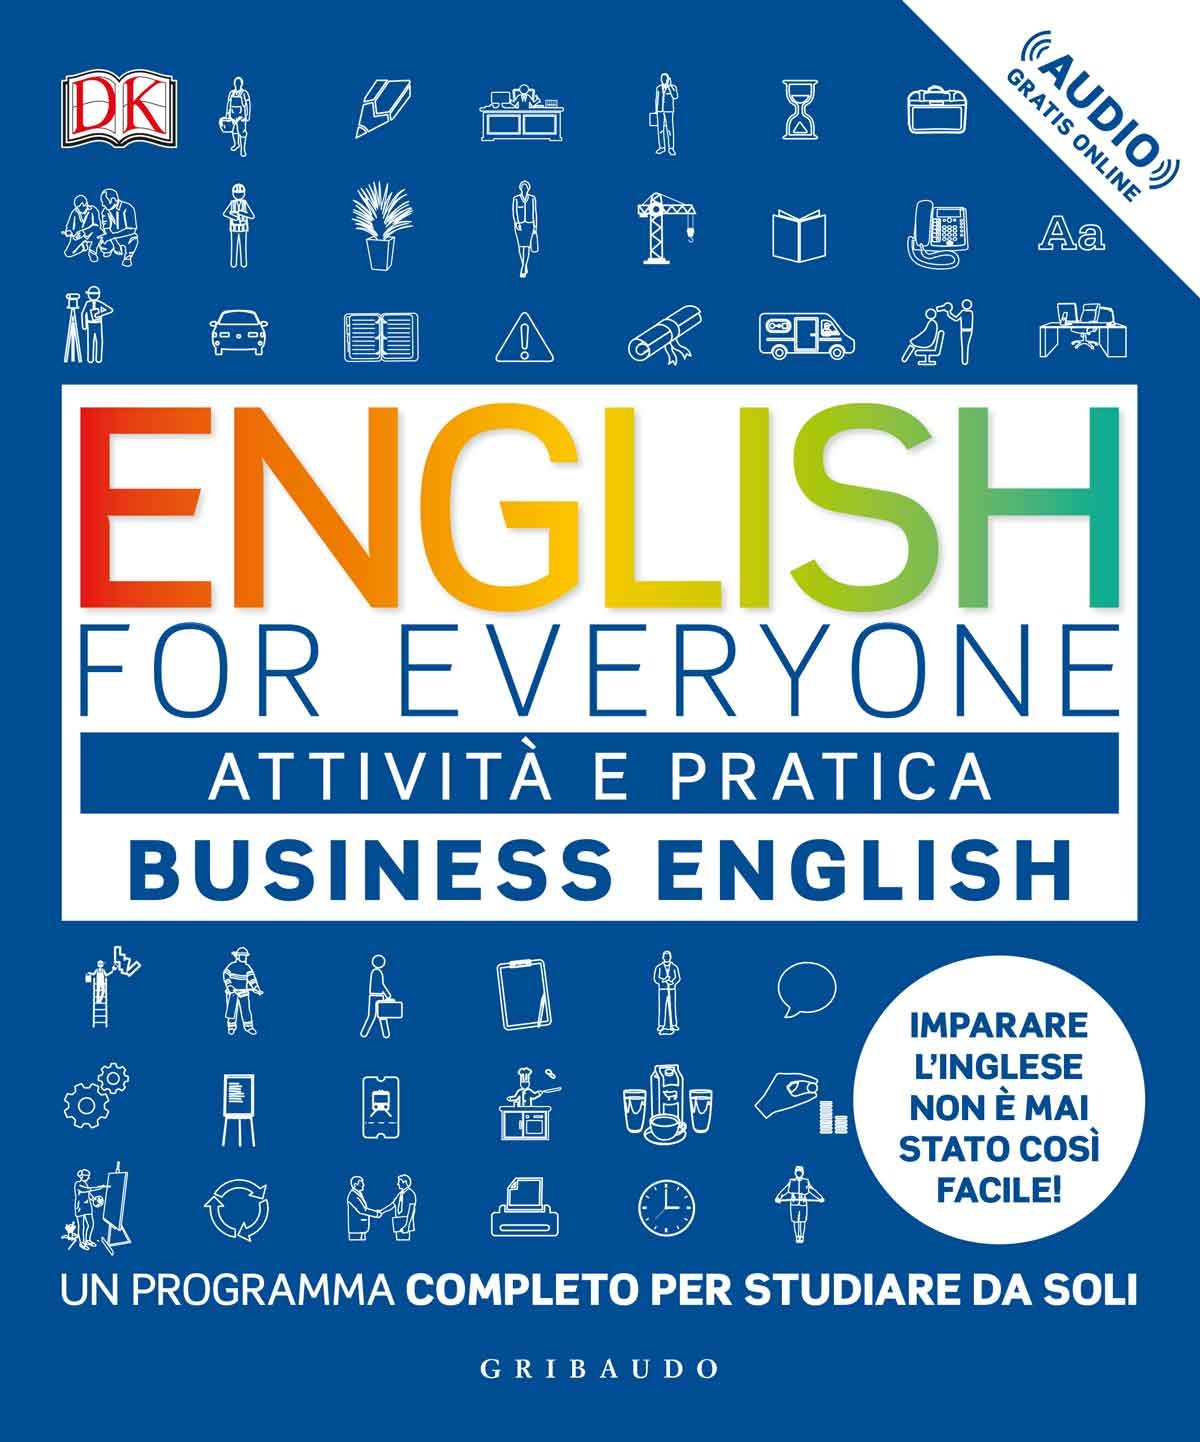 English for everyone - attività e pratica - Business English